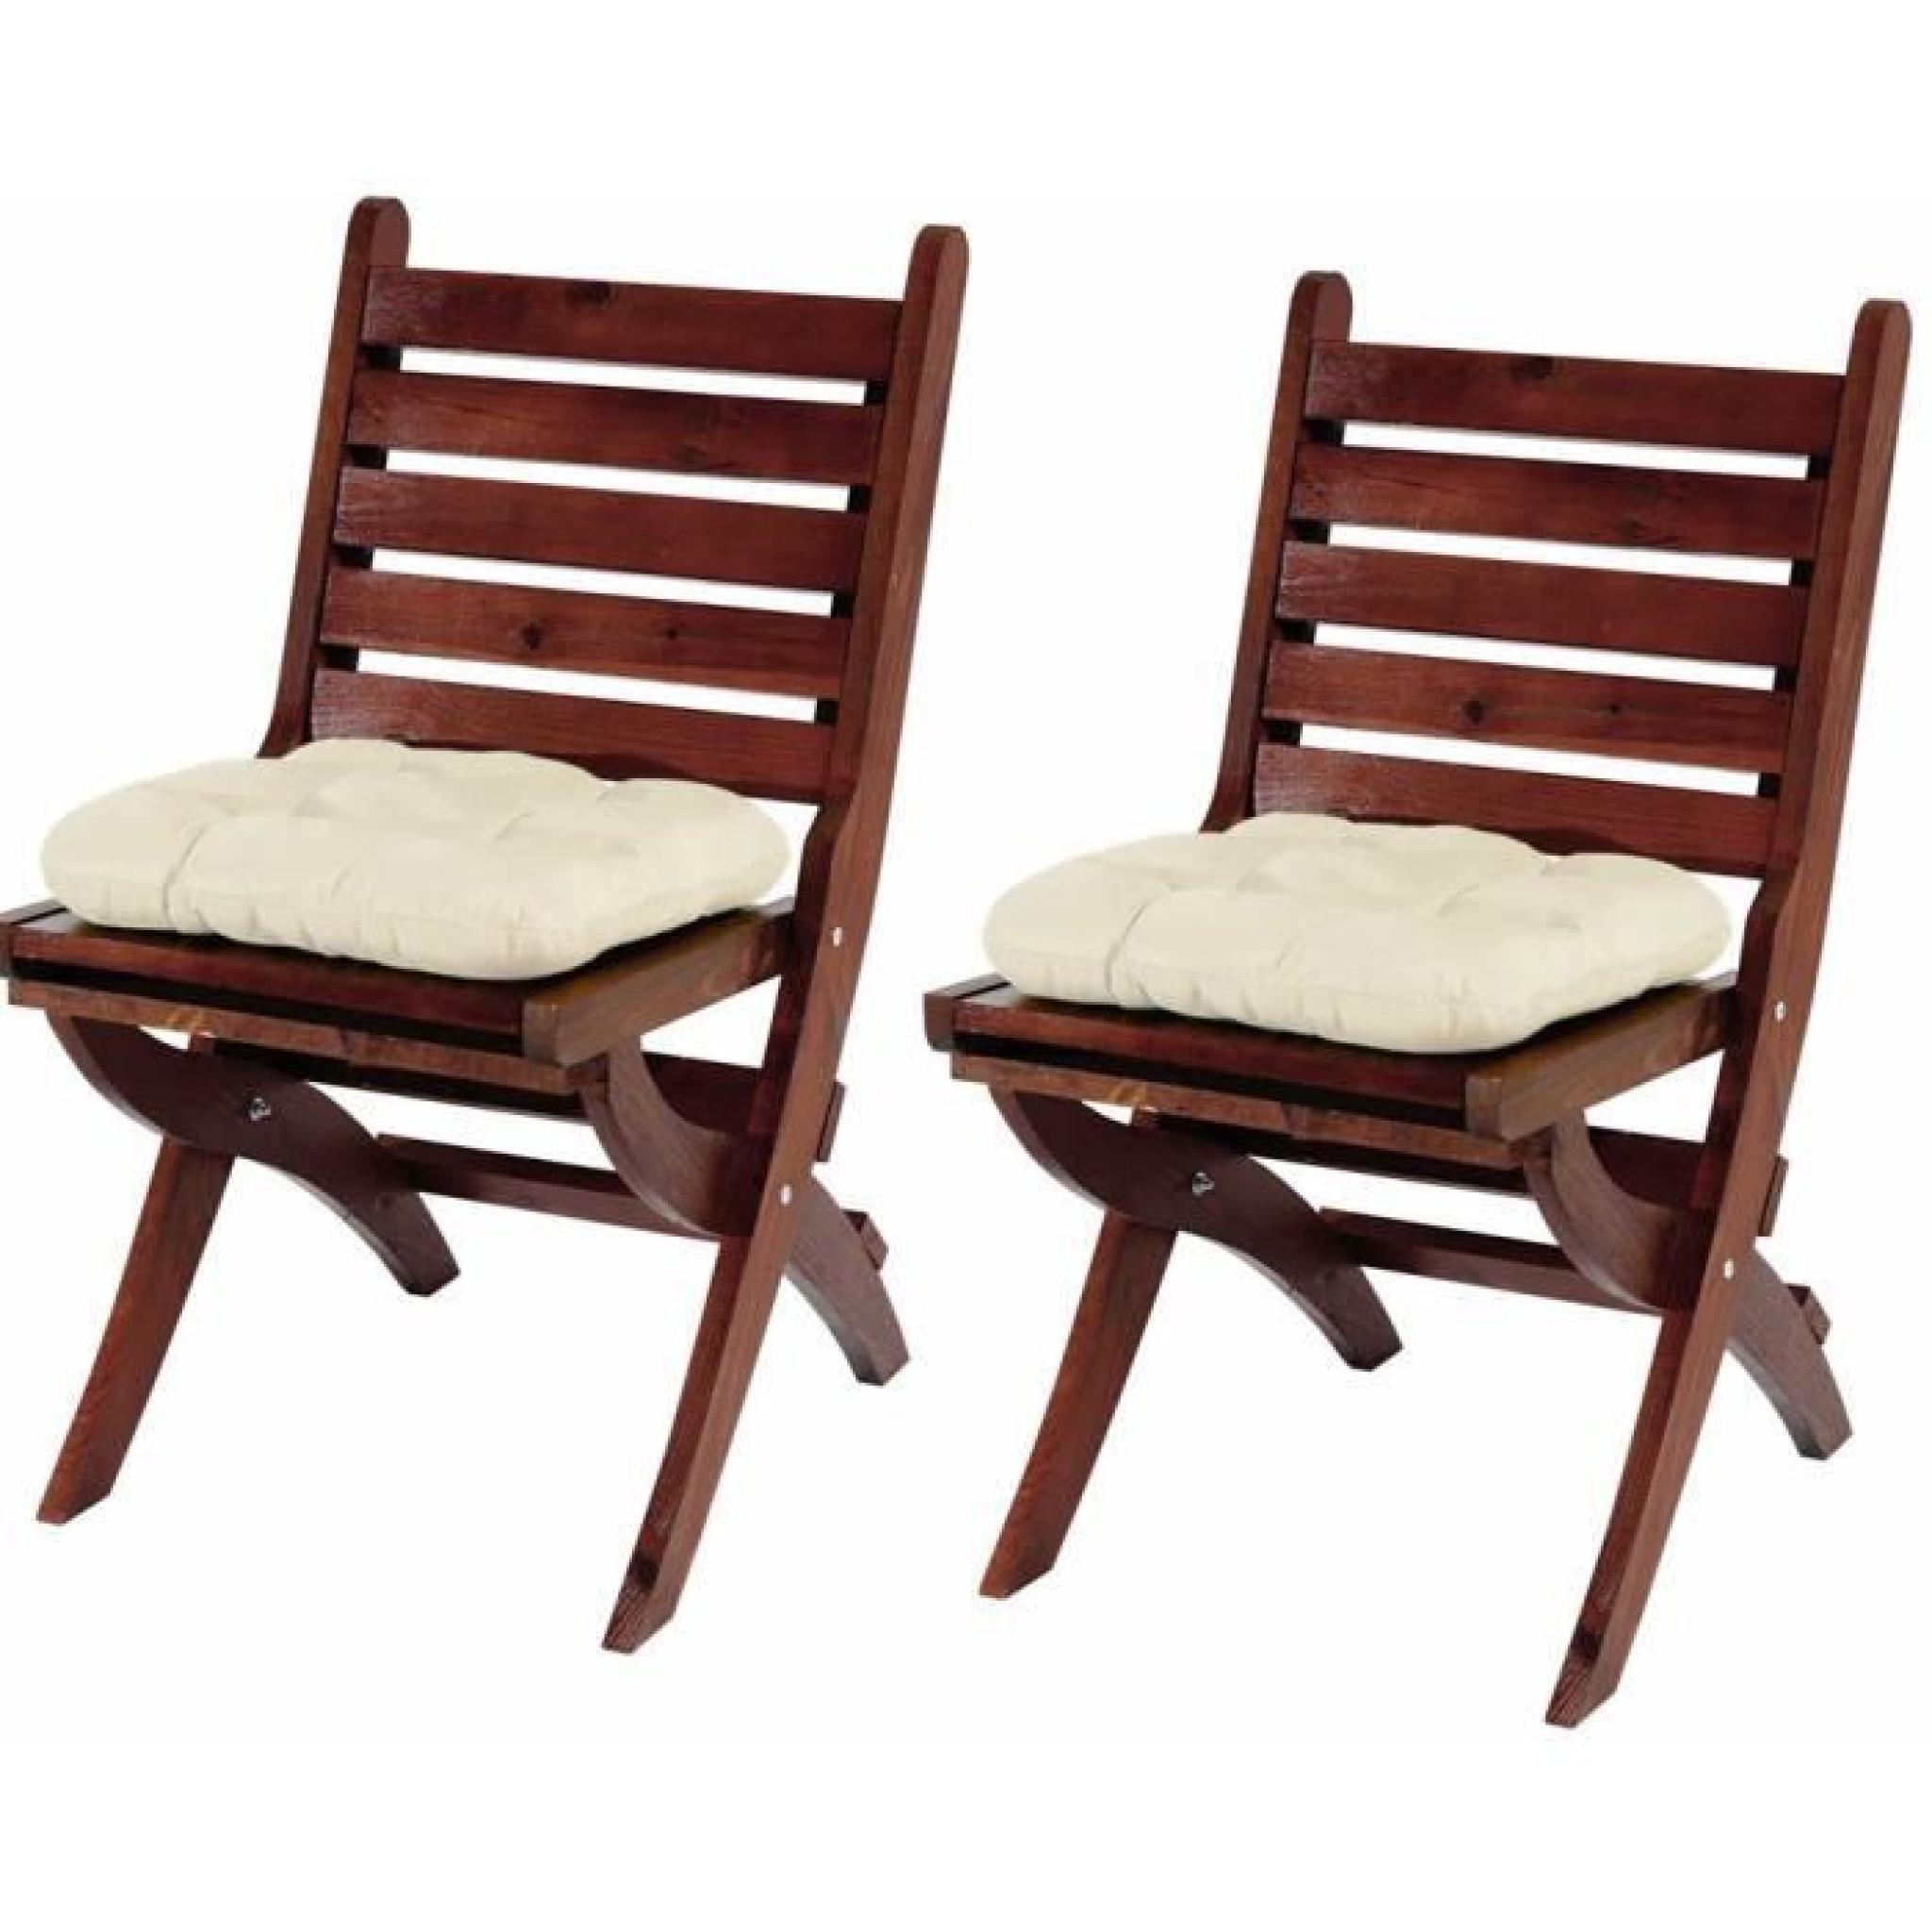 Lot de 2 chaises en bois Pinewood et 2 coussins Dublin couleur crème - Dim chaise :  H 94 x L 50 x P 60 cm